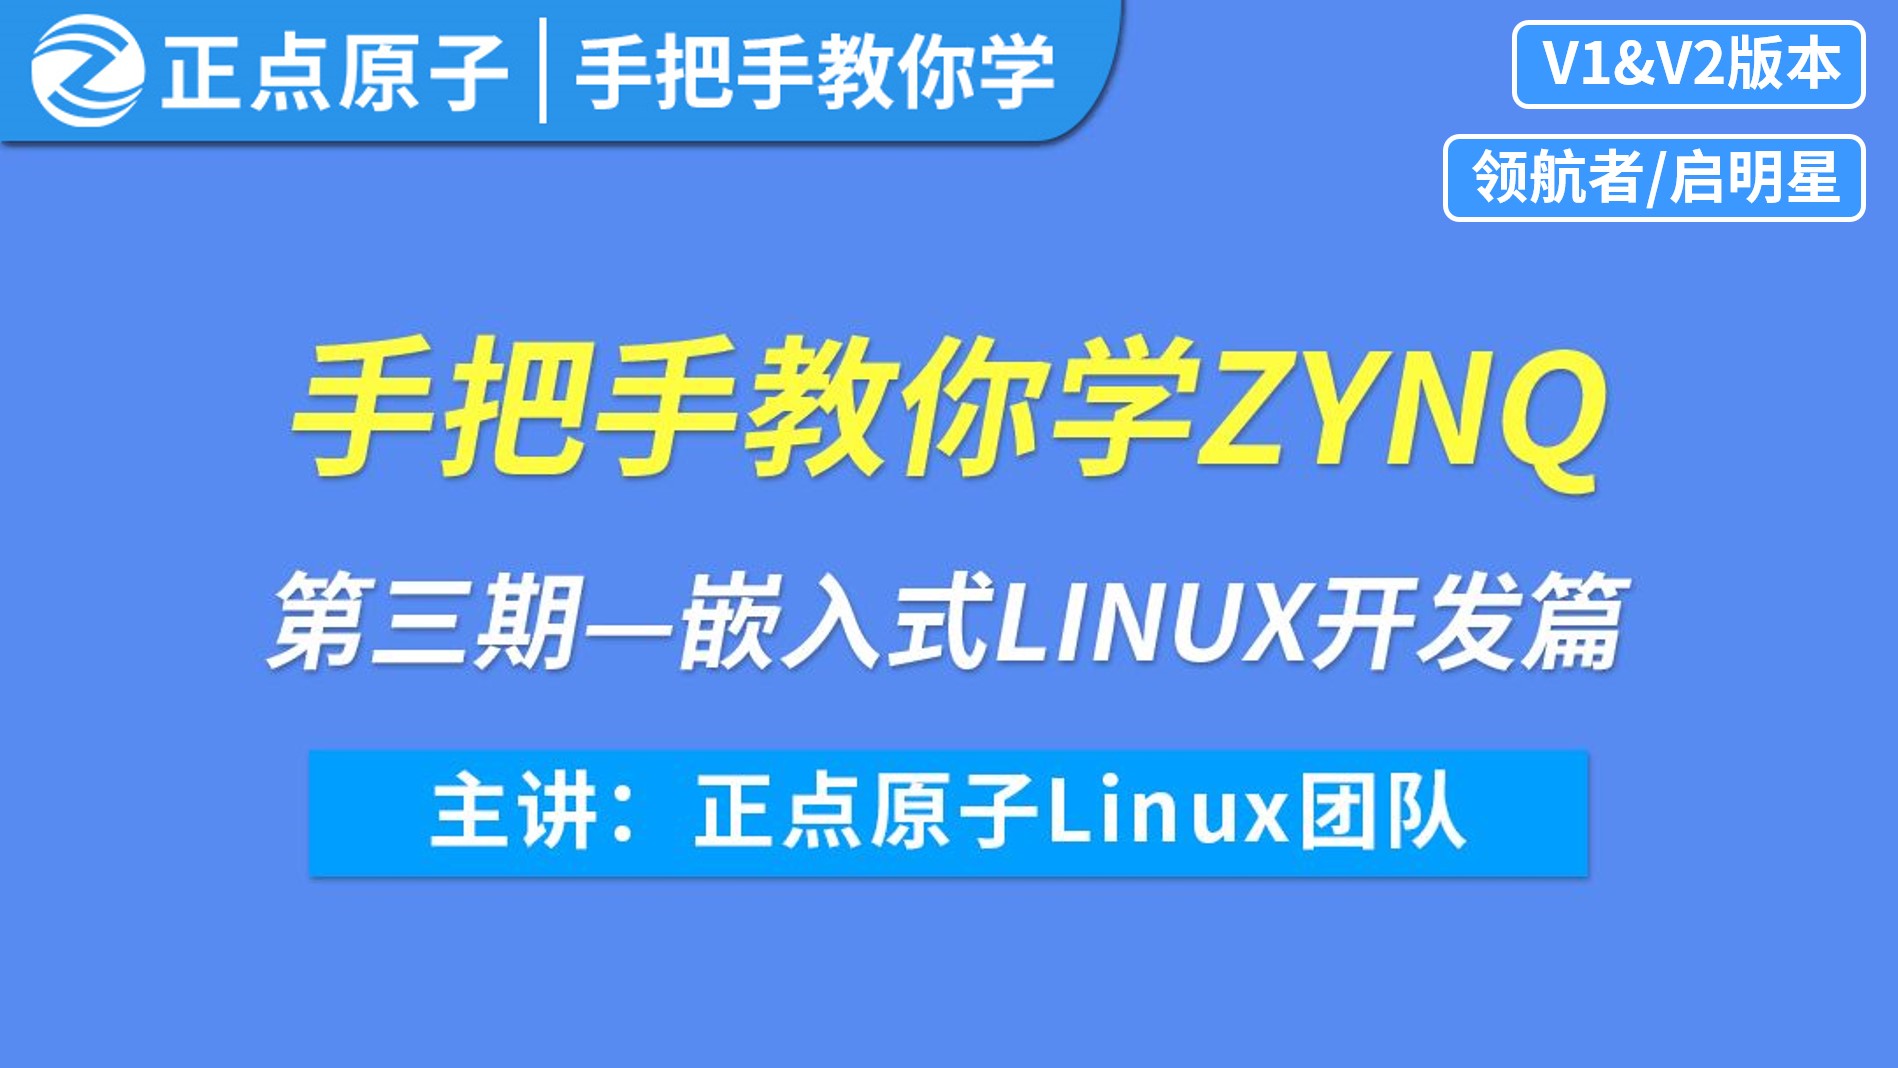 手把手教你学ZYNQ之【第三期】Linux开发篇-基于领航者/启明星开发板（V1&V2版本均适用）